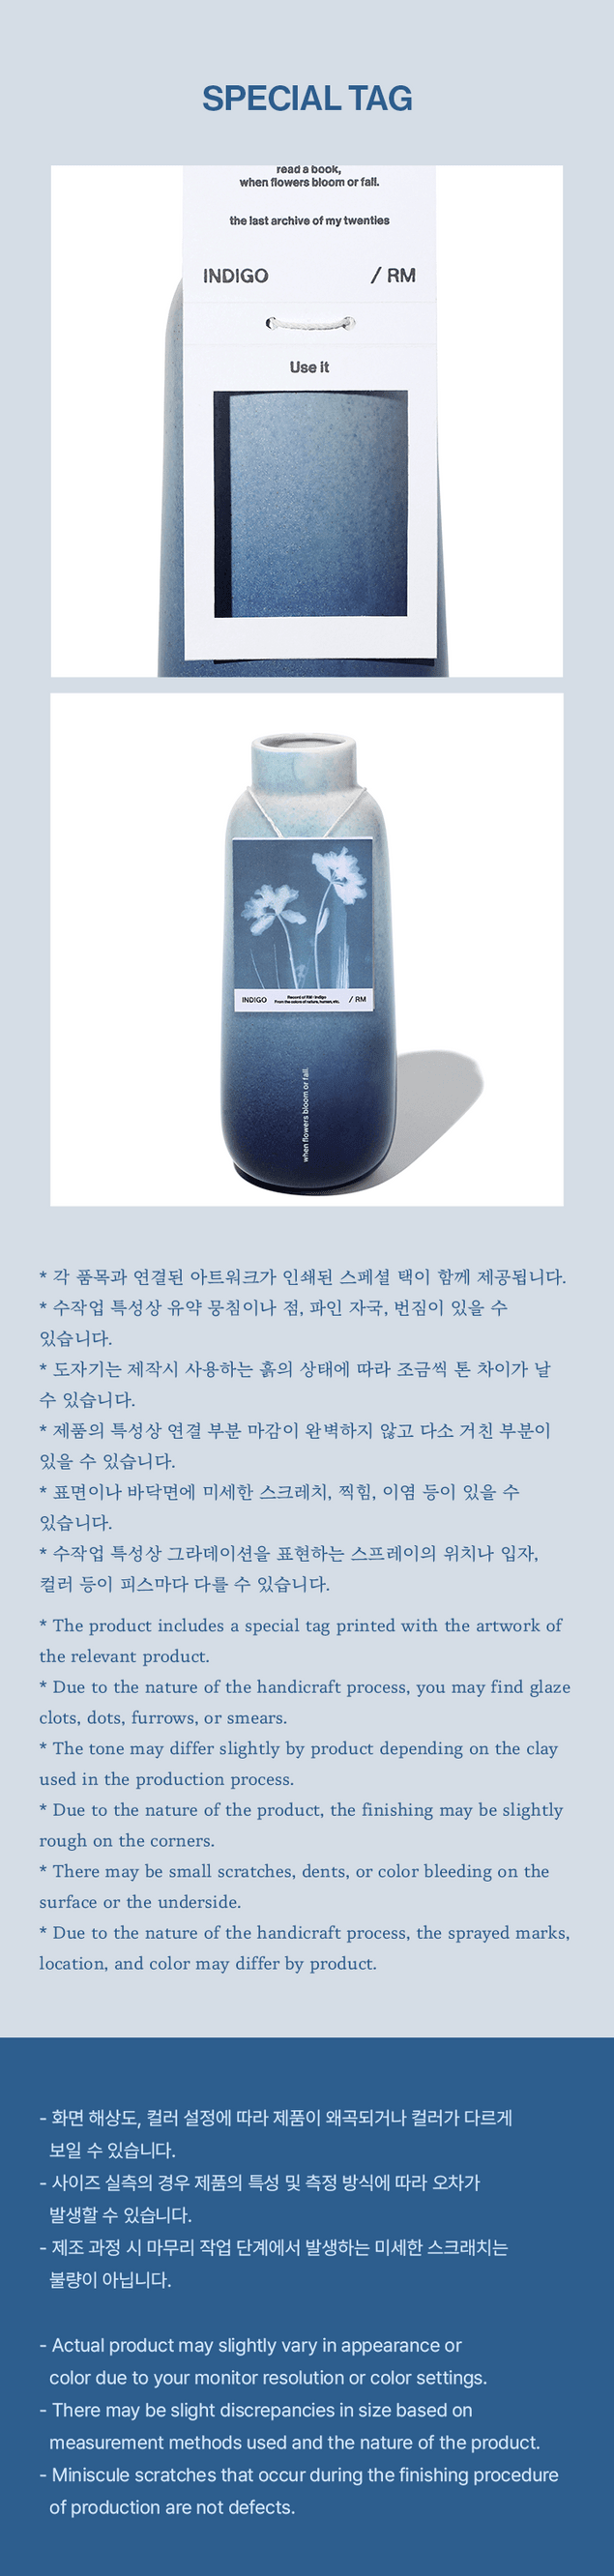 RM [Indigo] Vase